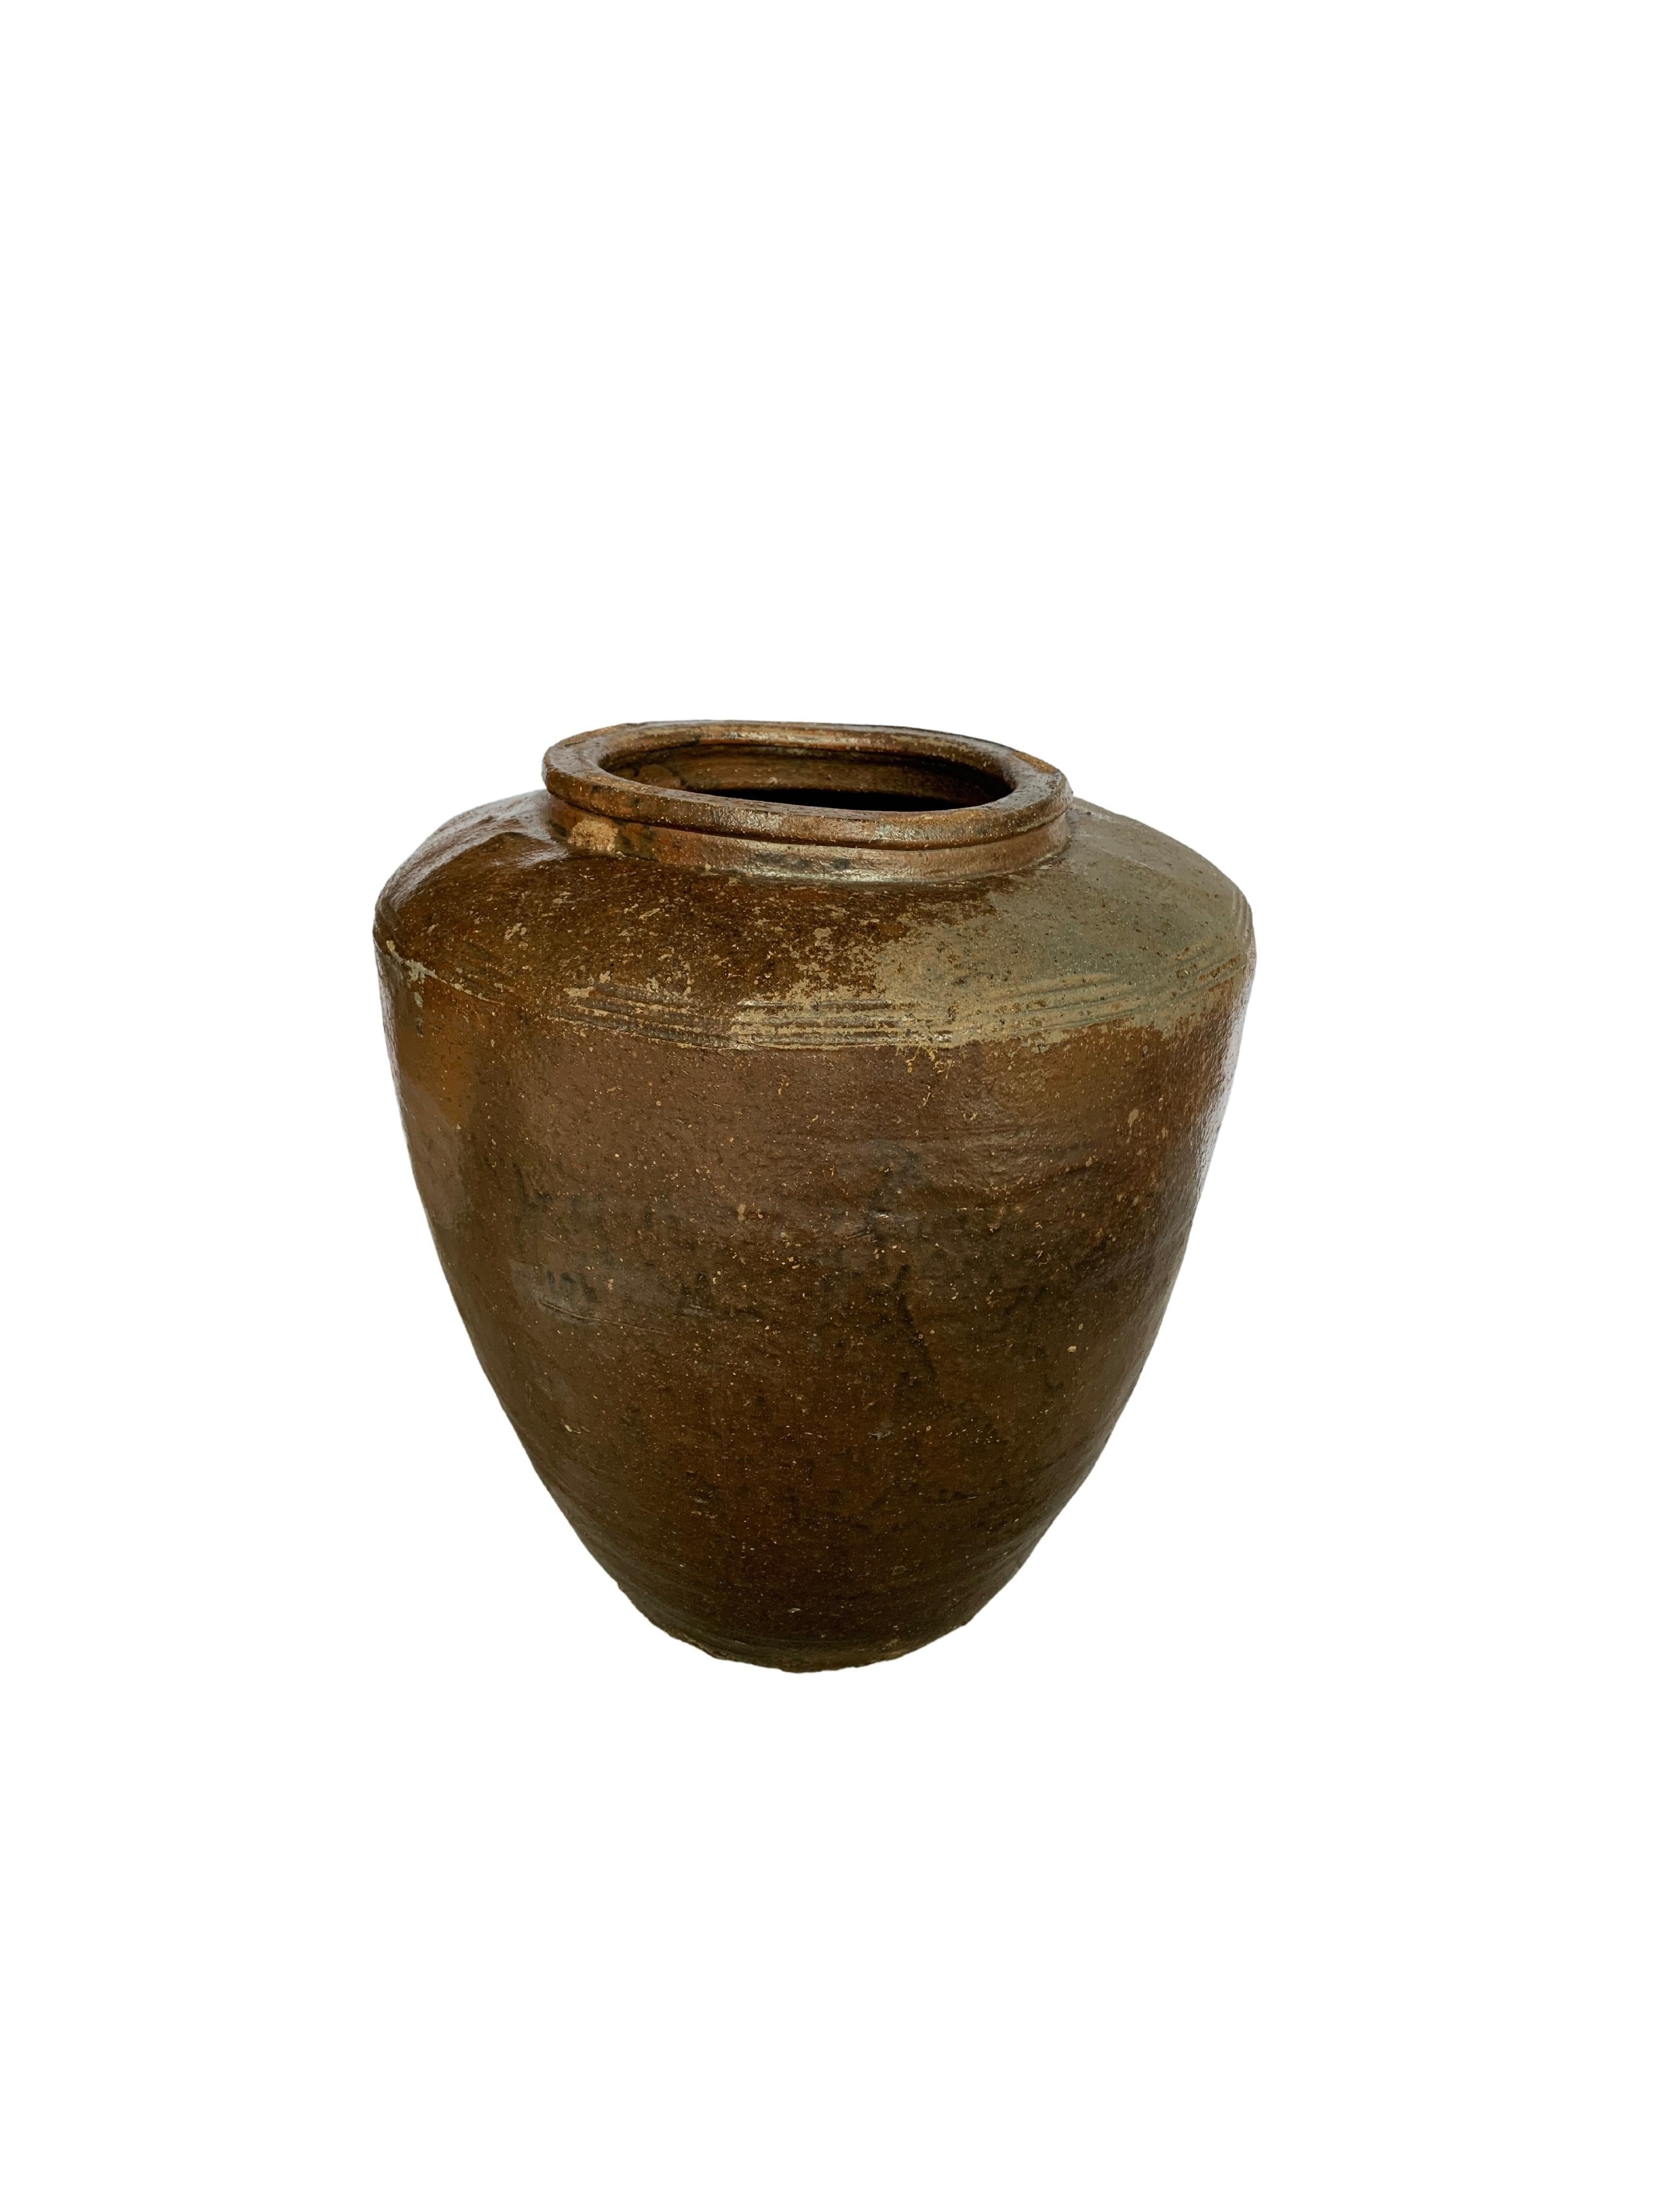 Antique Chinese Brown & Black Glazed Ceramic Salty Egg Jar, c. 1900 For Sale 3